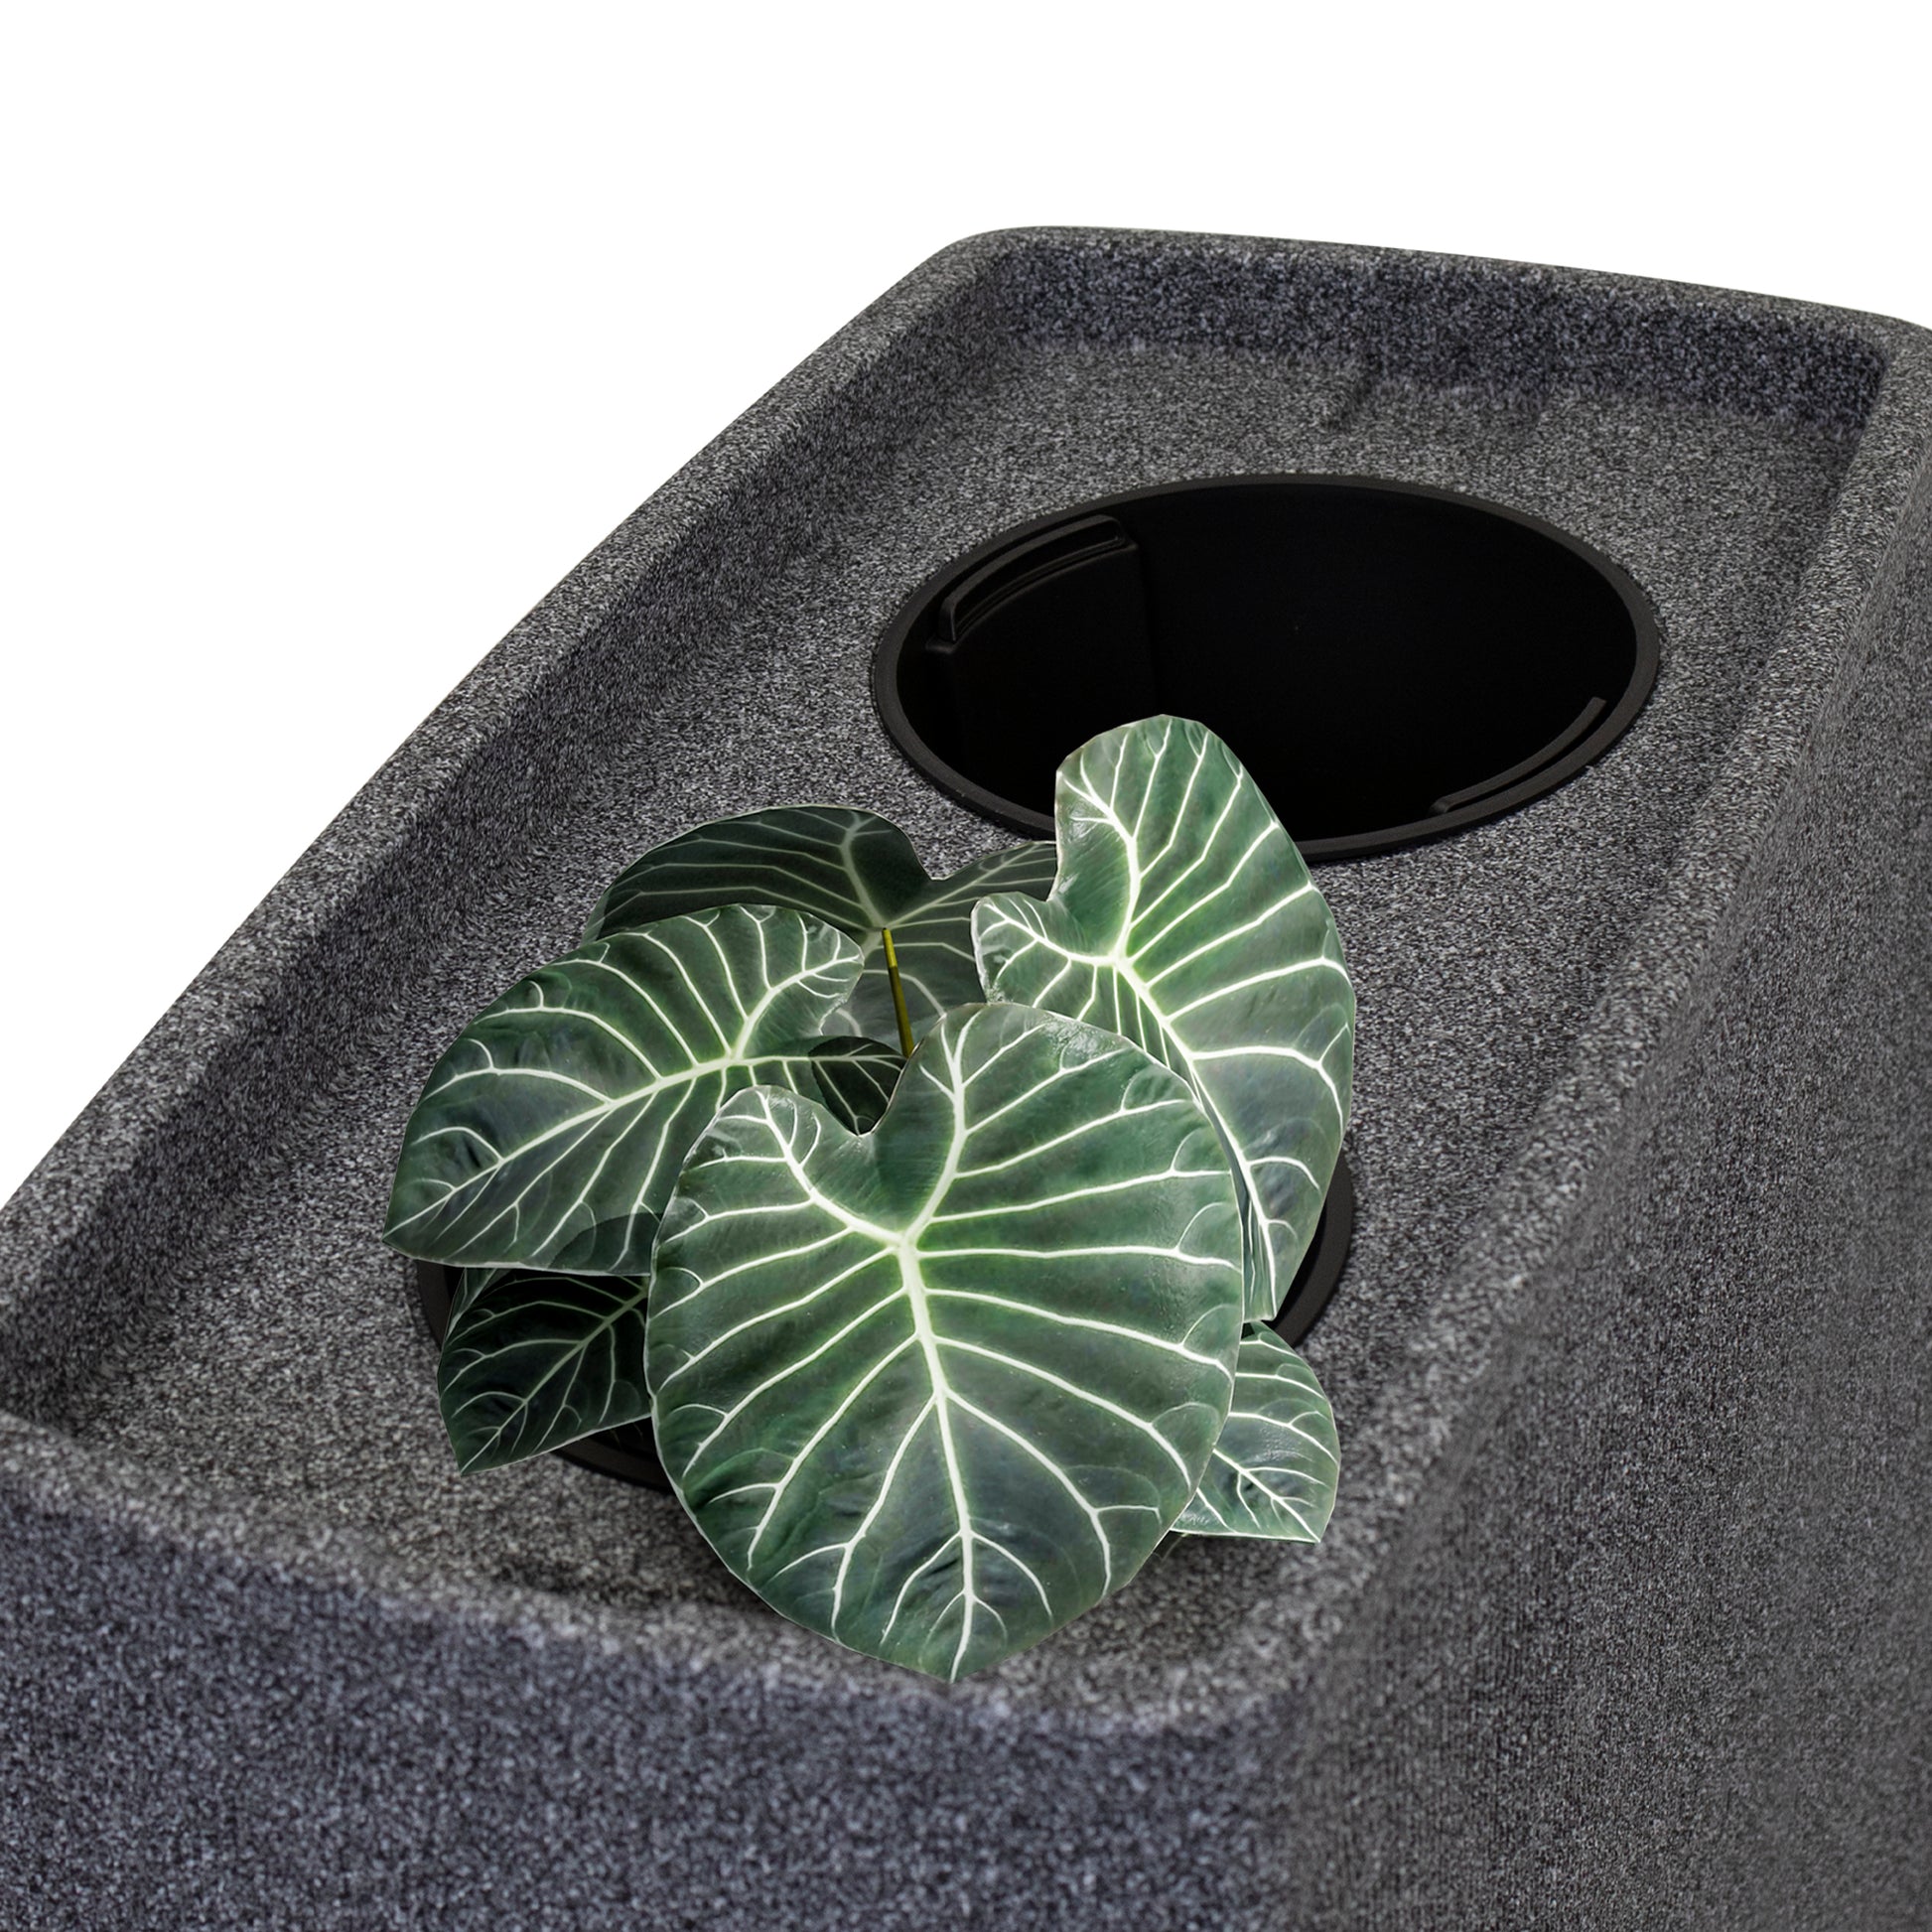 Eine moderne Küchenspüle mit integrierter YourCasa Regentonne 270 Liter [QuadraFlow Rain], eckigem und schmalem Einlaufloch und einer dekorativen Pflanze mit frostsicher grünen Blättern.